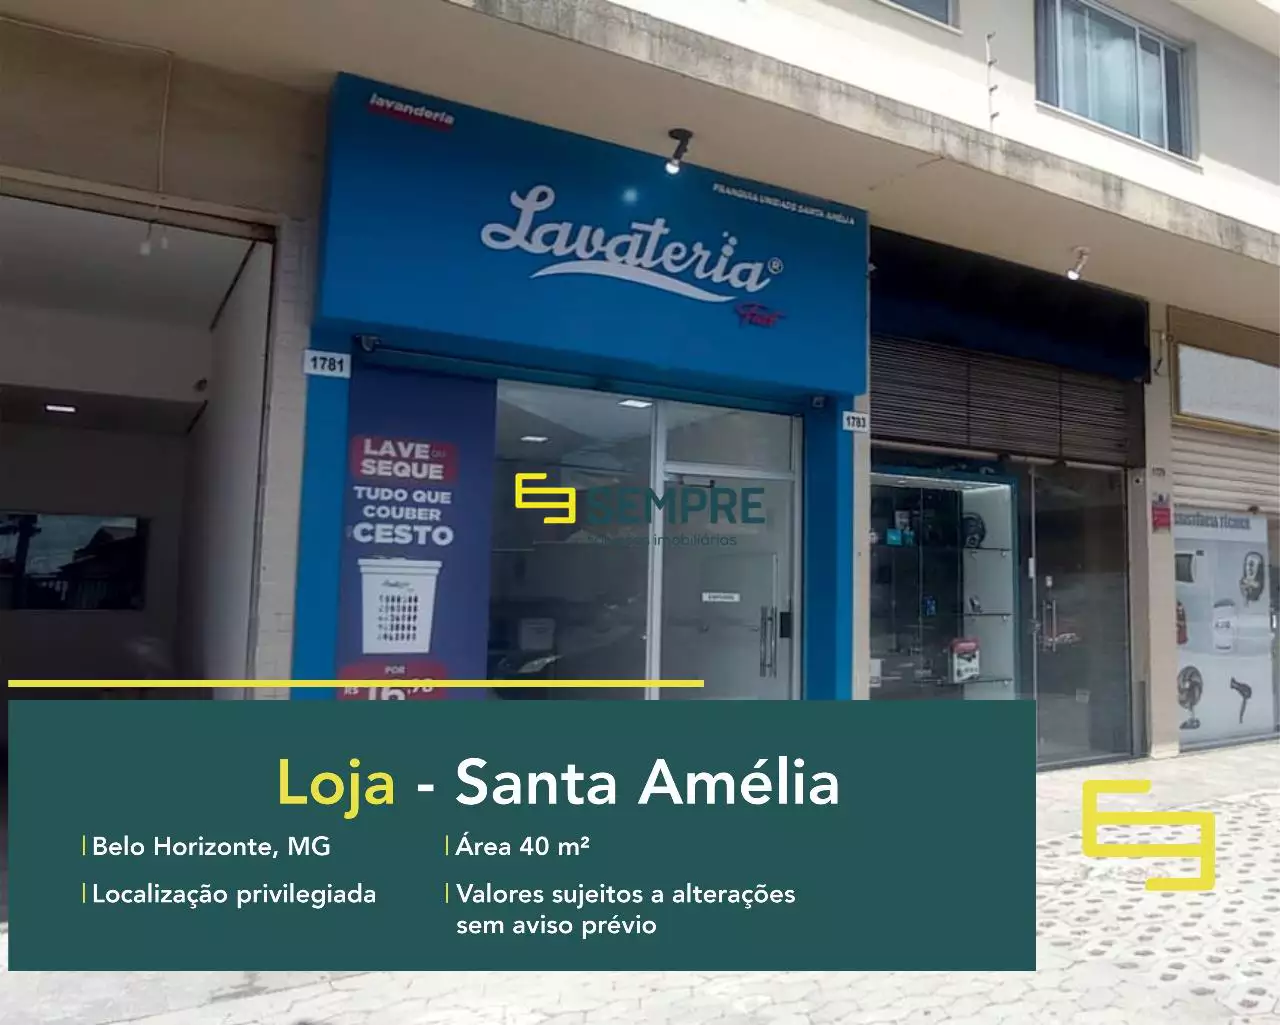 Loja à venda na Pampulha, rua das Canárias em Belo Horizonte, em excelente localização. O estabelecimento comercial conta com área de 40 m².